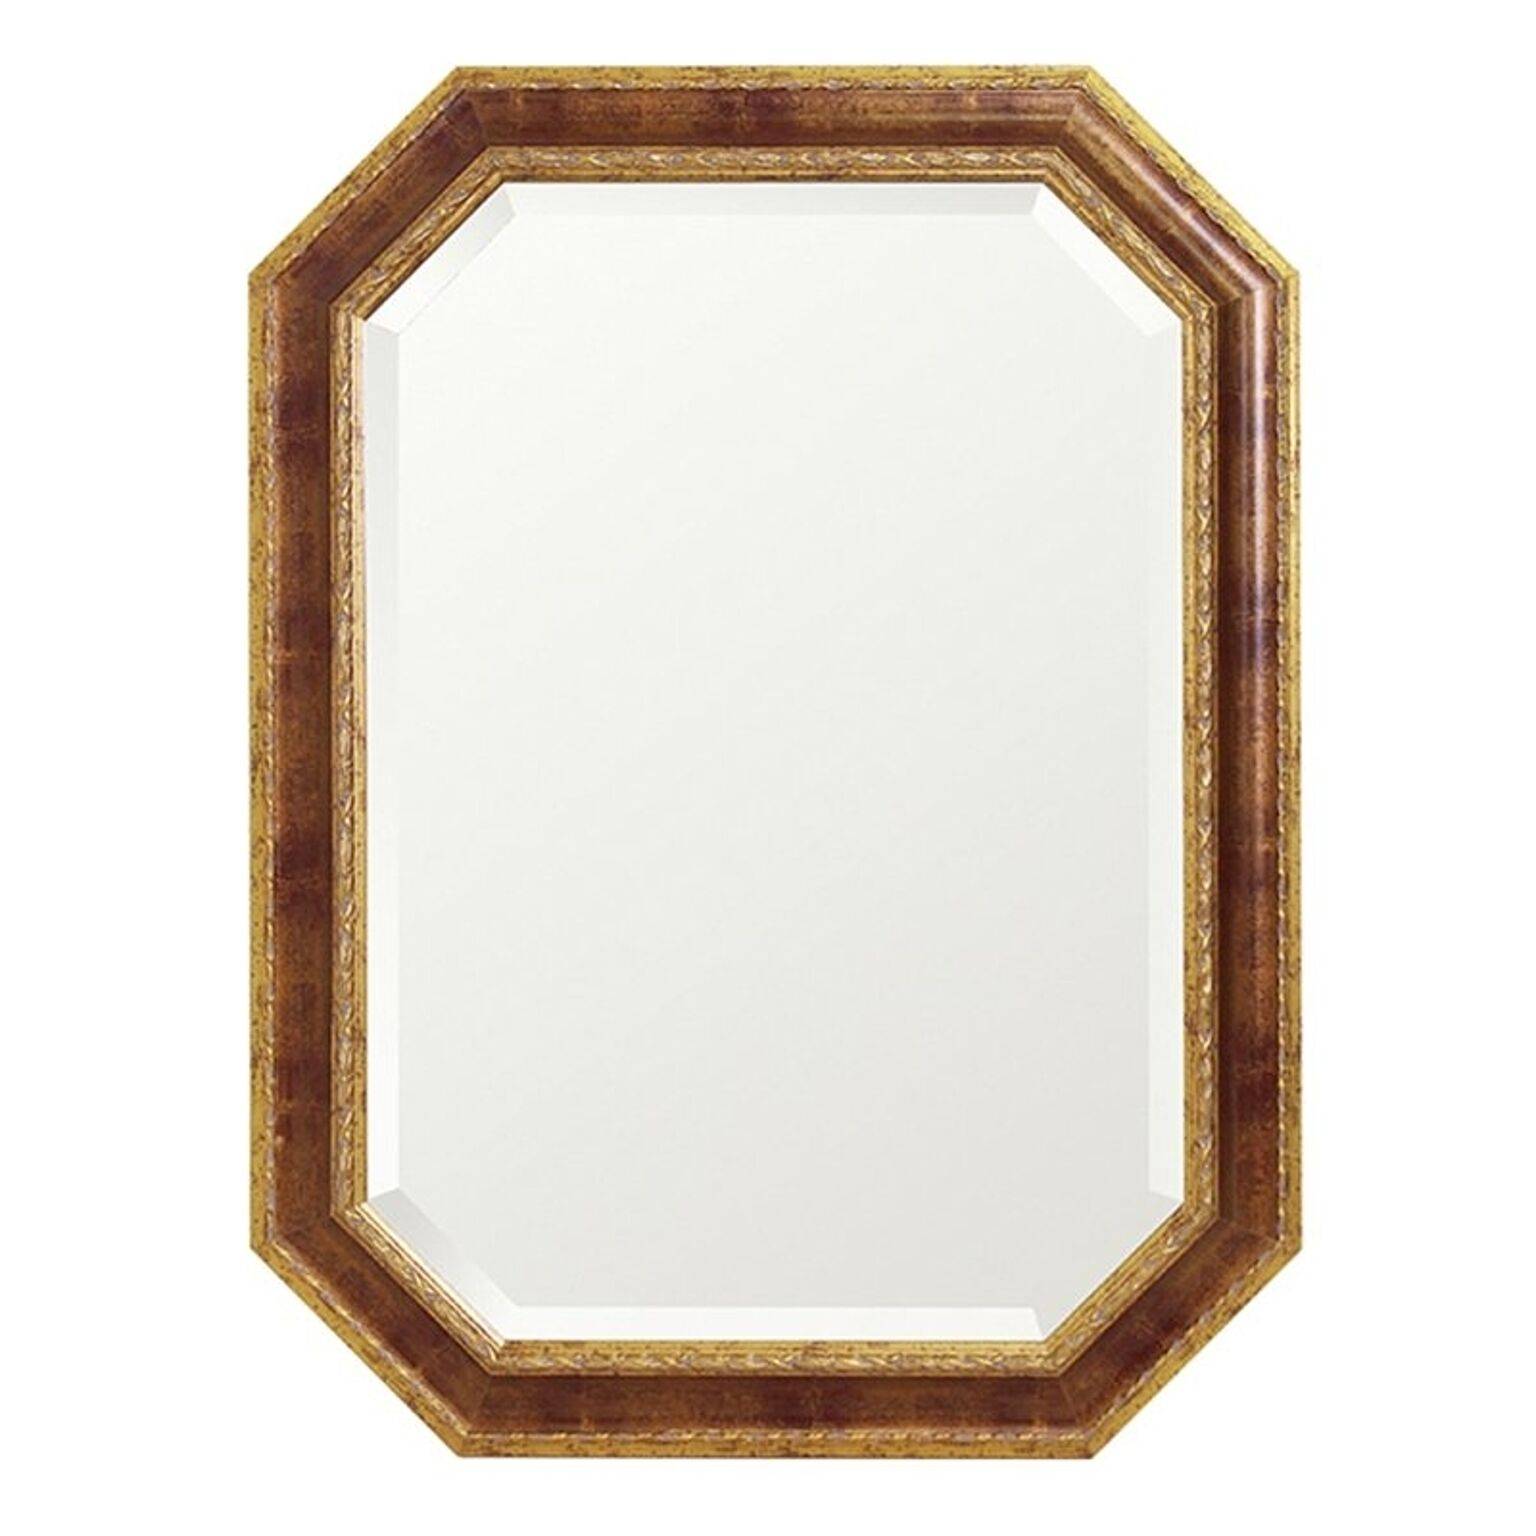 塩川光明堂 ウォールミラー Italian mirror series イタリアンミラー キャロル 6181 